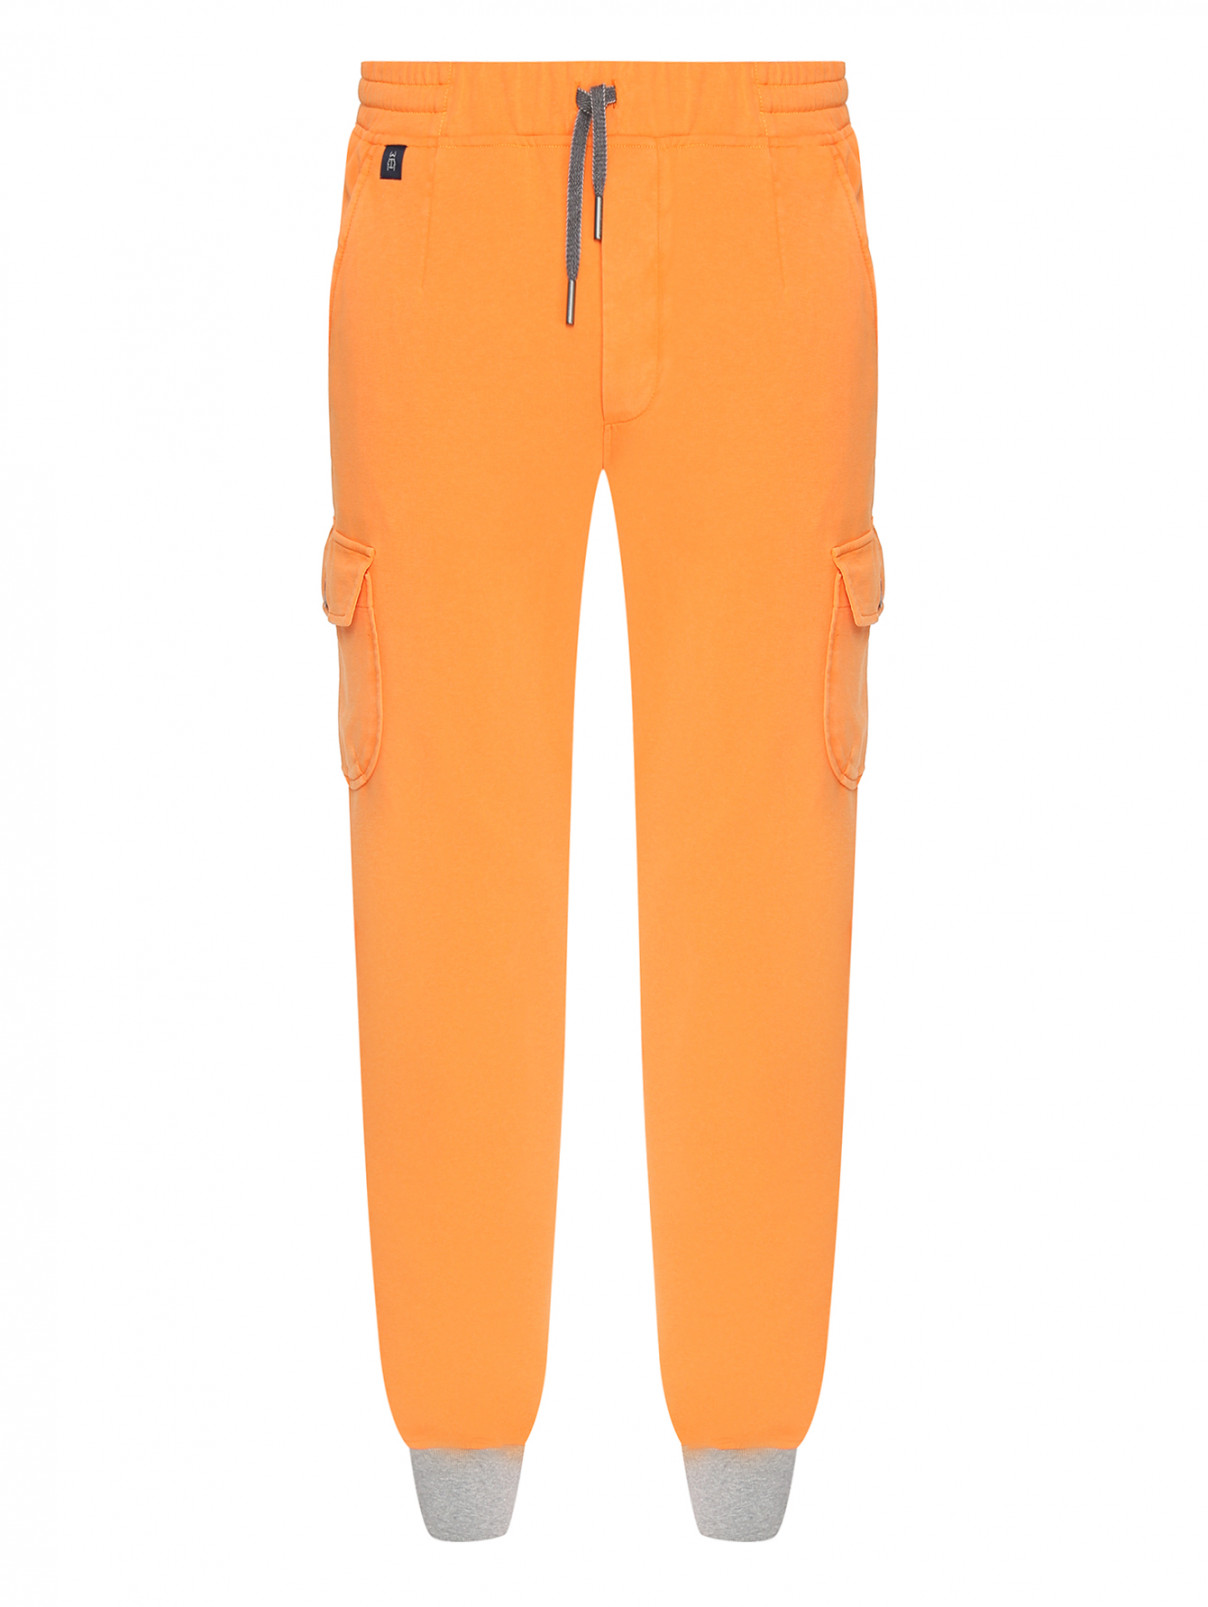 Трикотажные брюки из хлопка с накладными карманами Capobianco  –  Общий вид  – Цвет:  Оранжевый